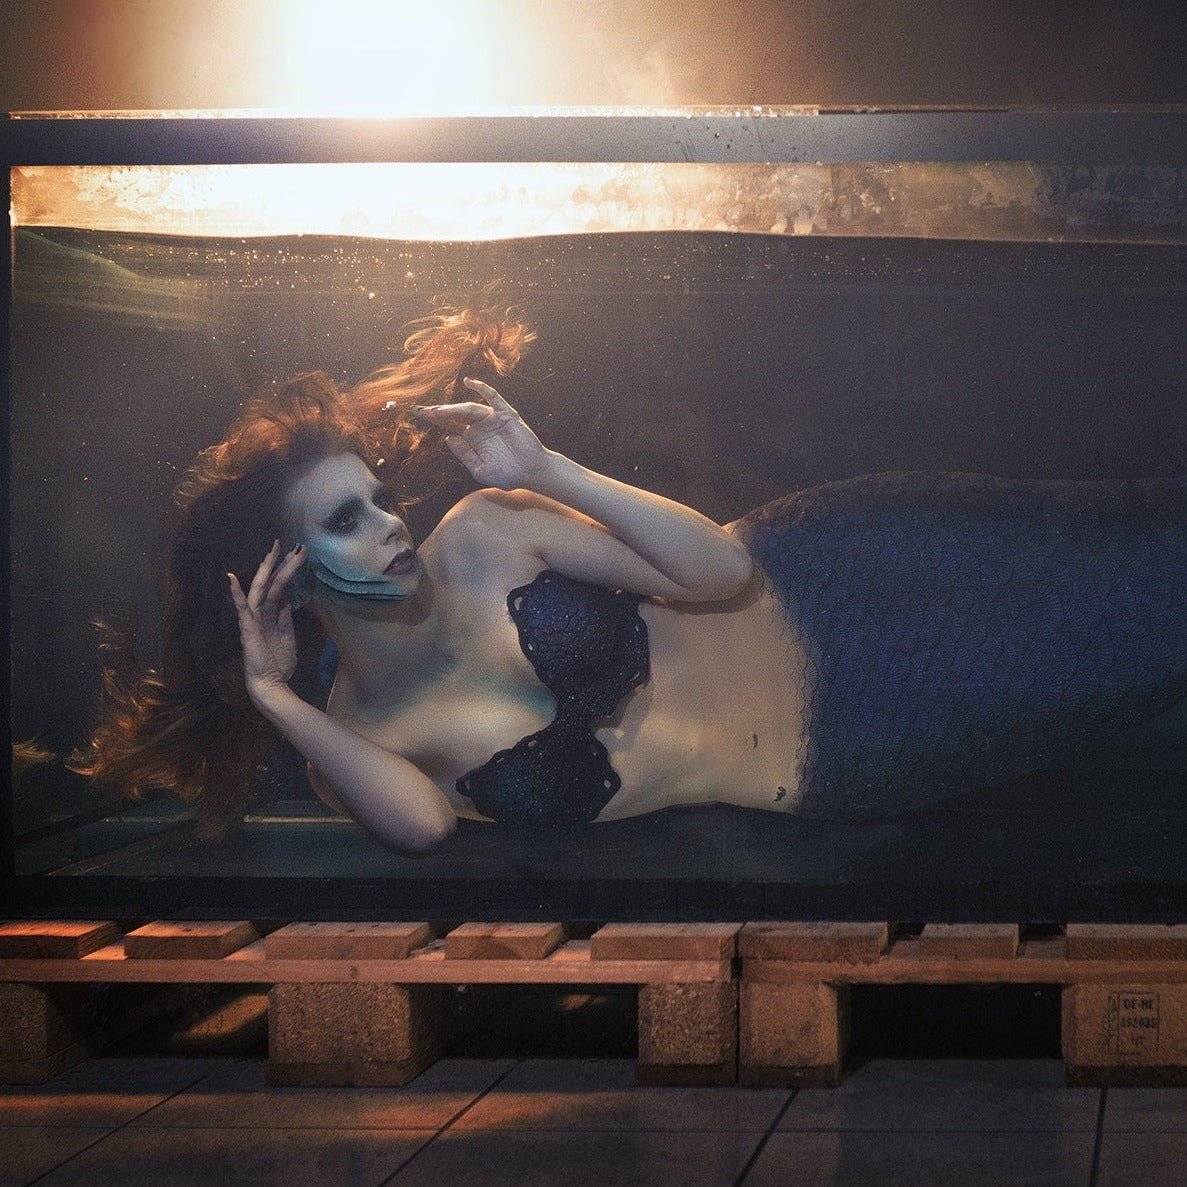 Mermaid, wearing mermaid gills, in a tank